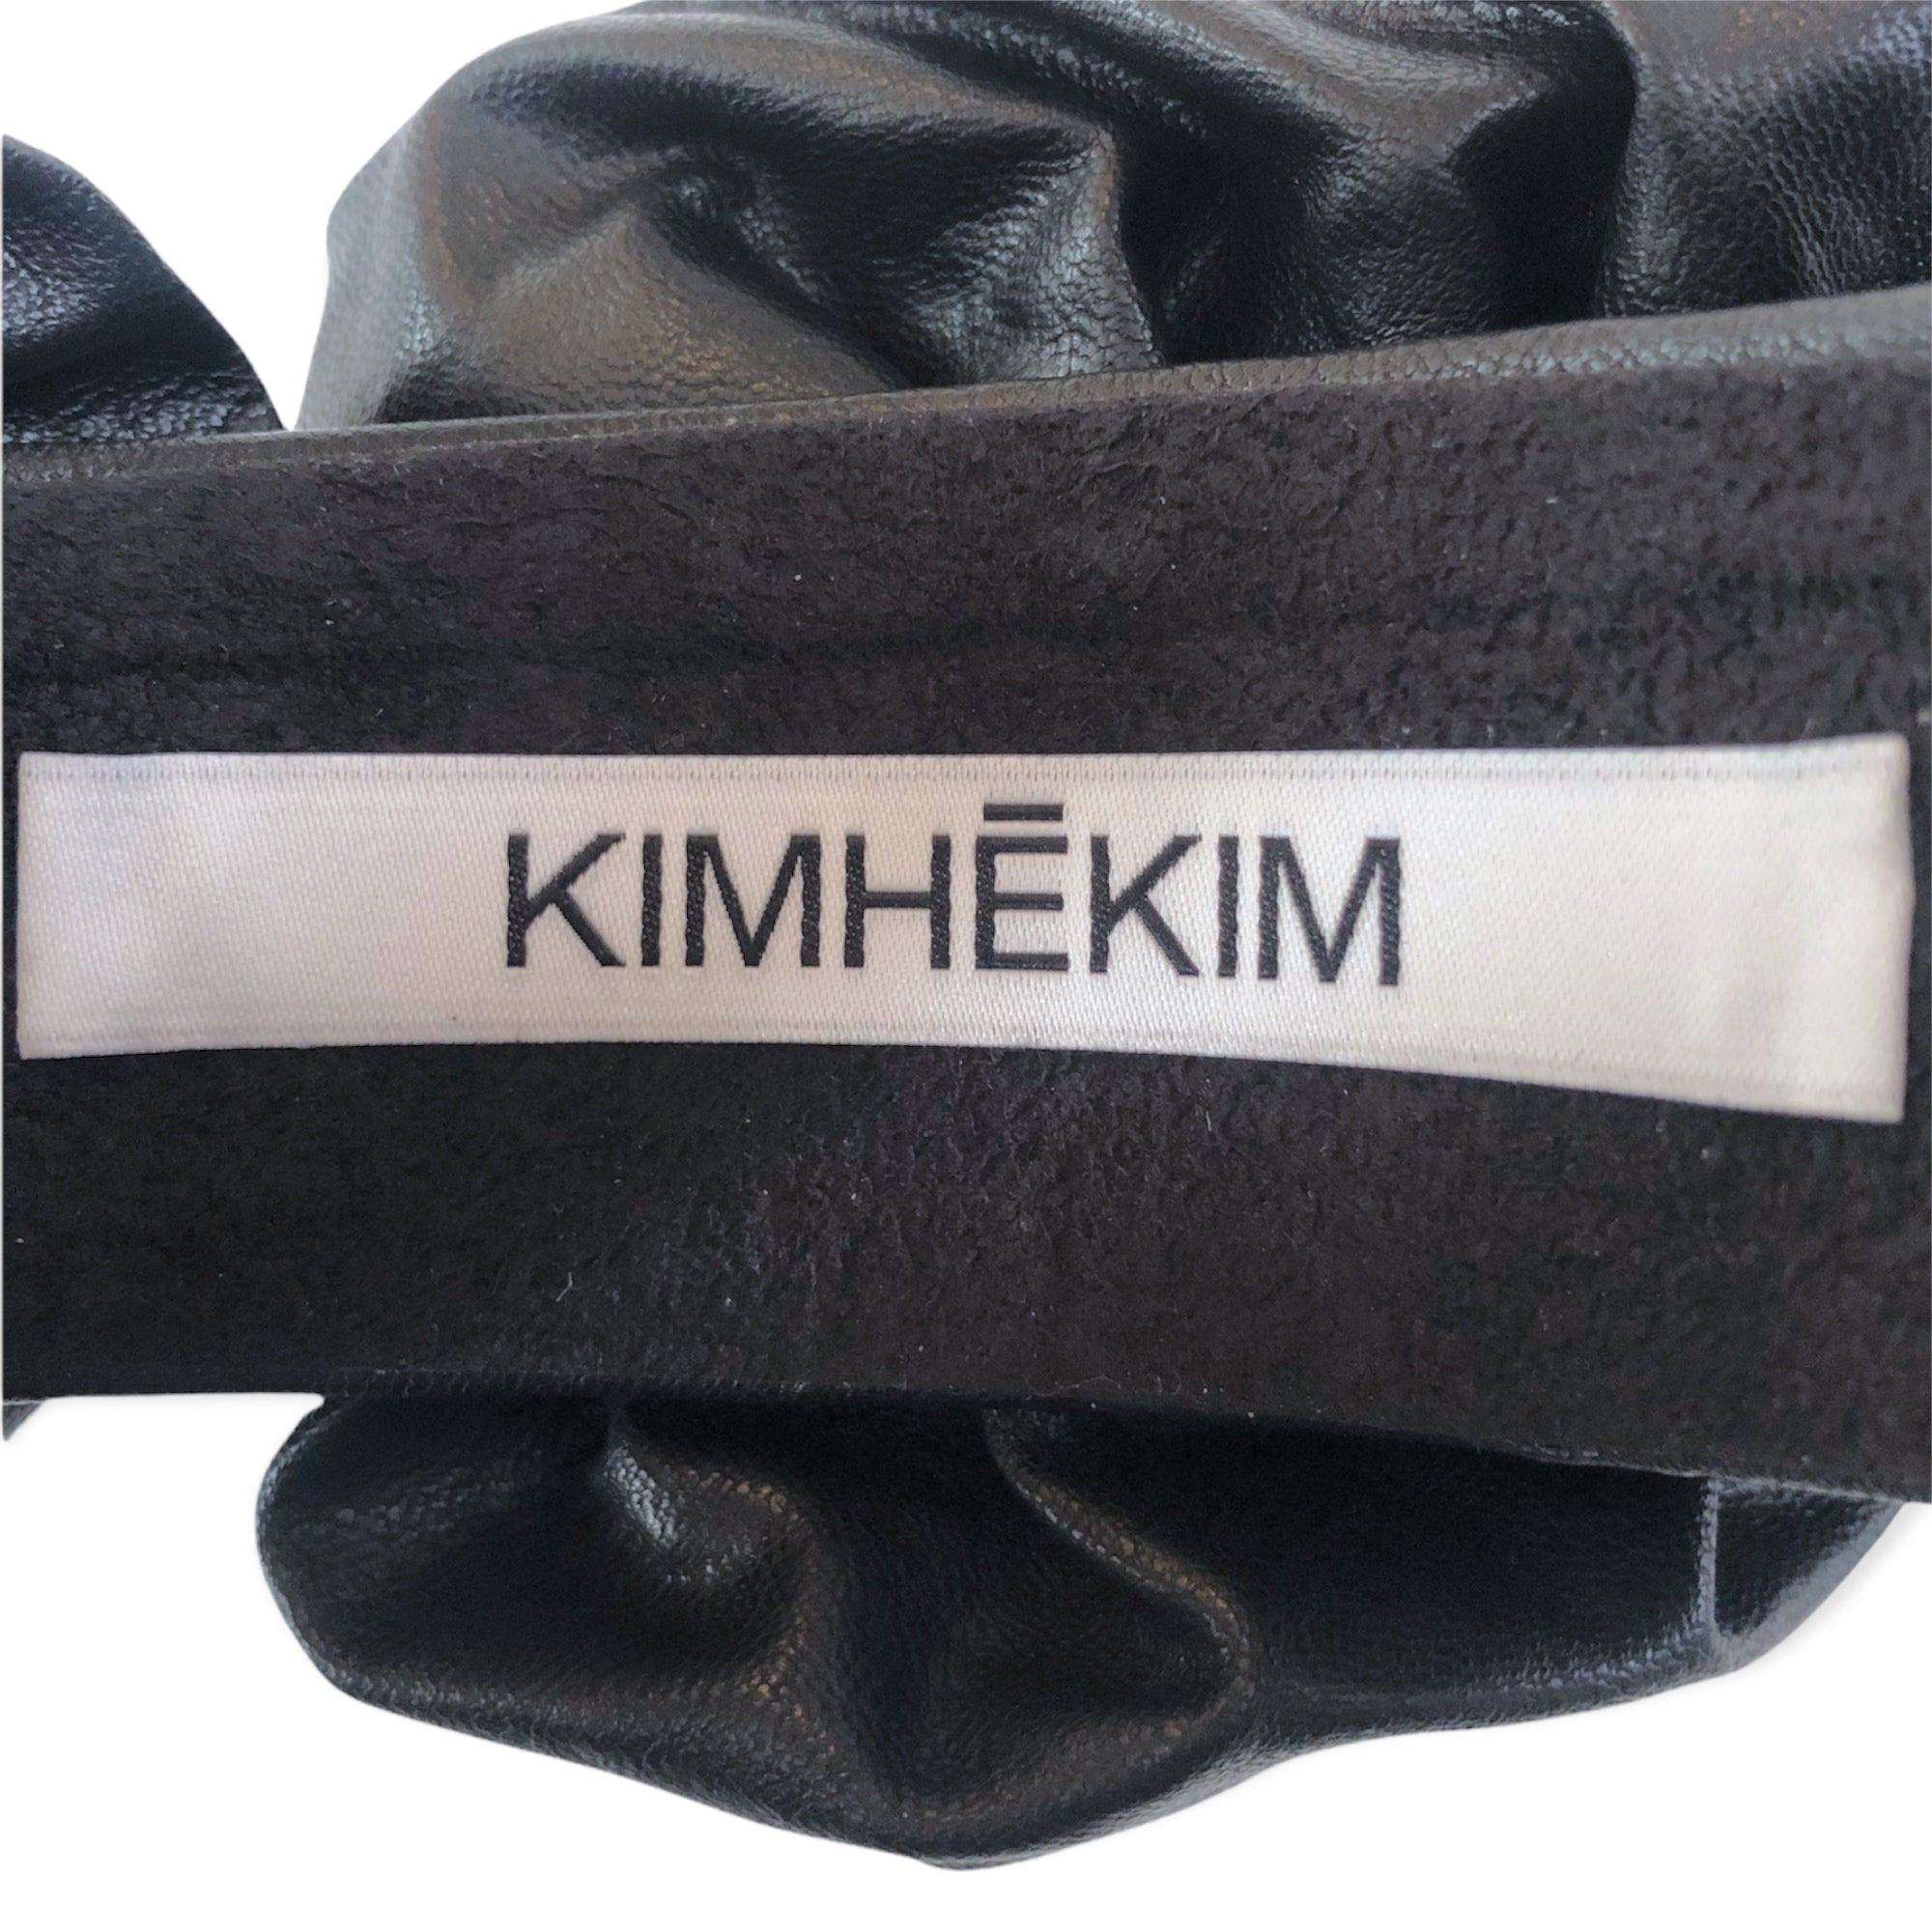 [SALE]KIMHEKIM ROSAMUND HAIR BAND(BLACK)